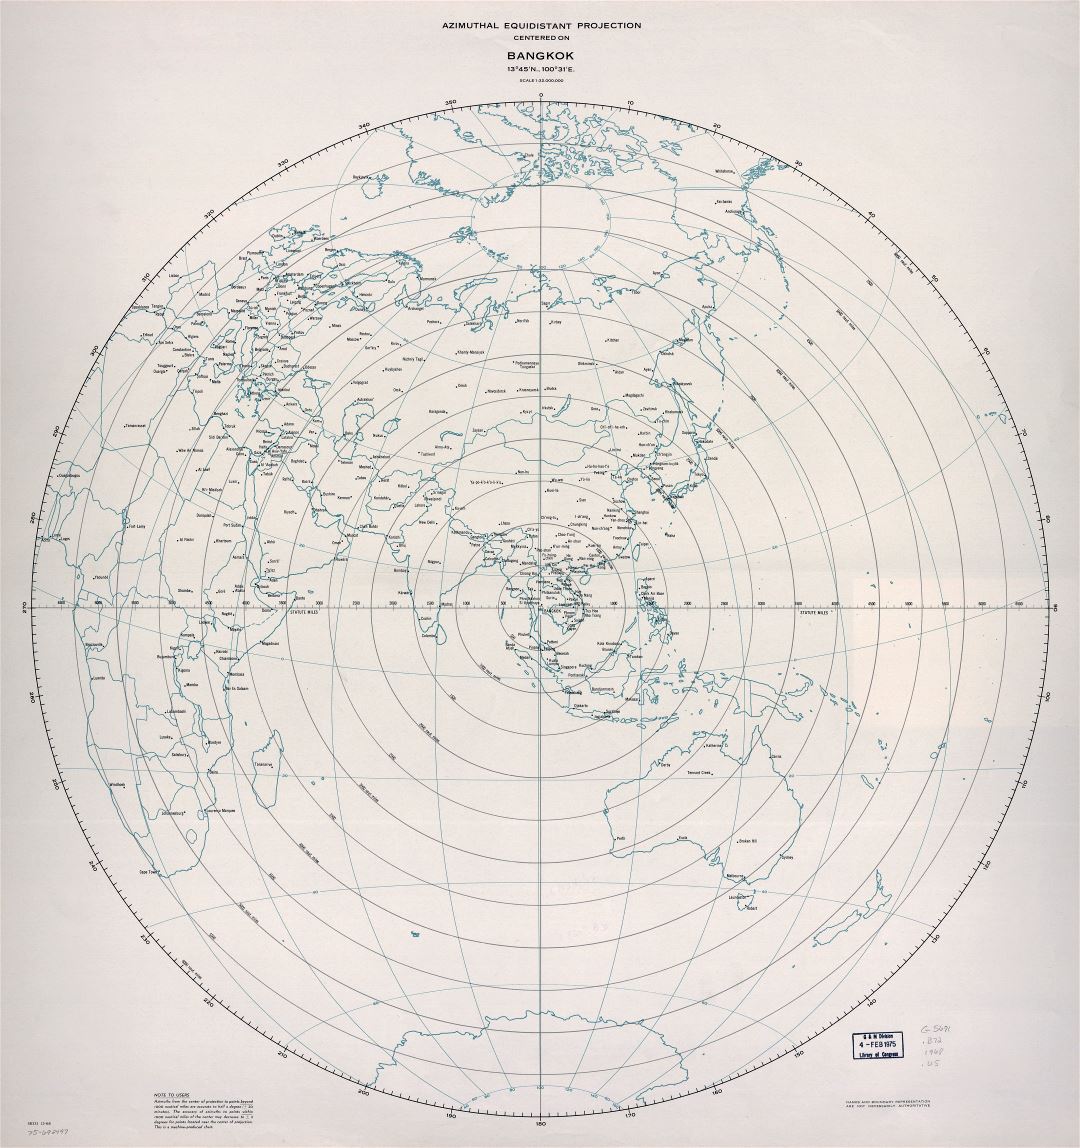 Grande detallado mapa de proyección equidistante azimutal centrado en Bangkok - 1968